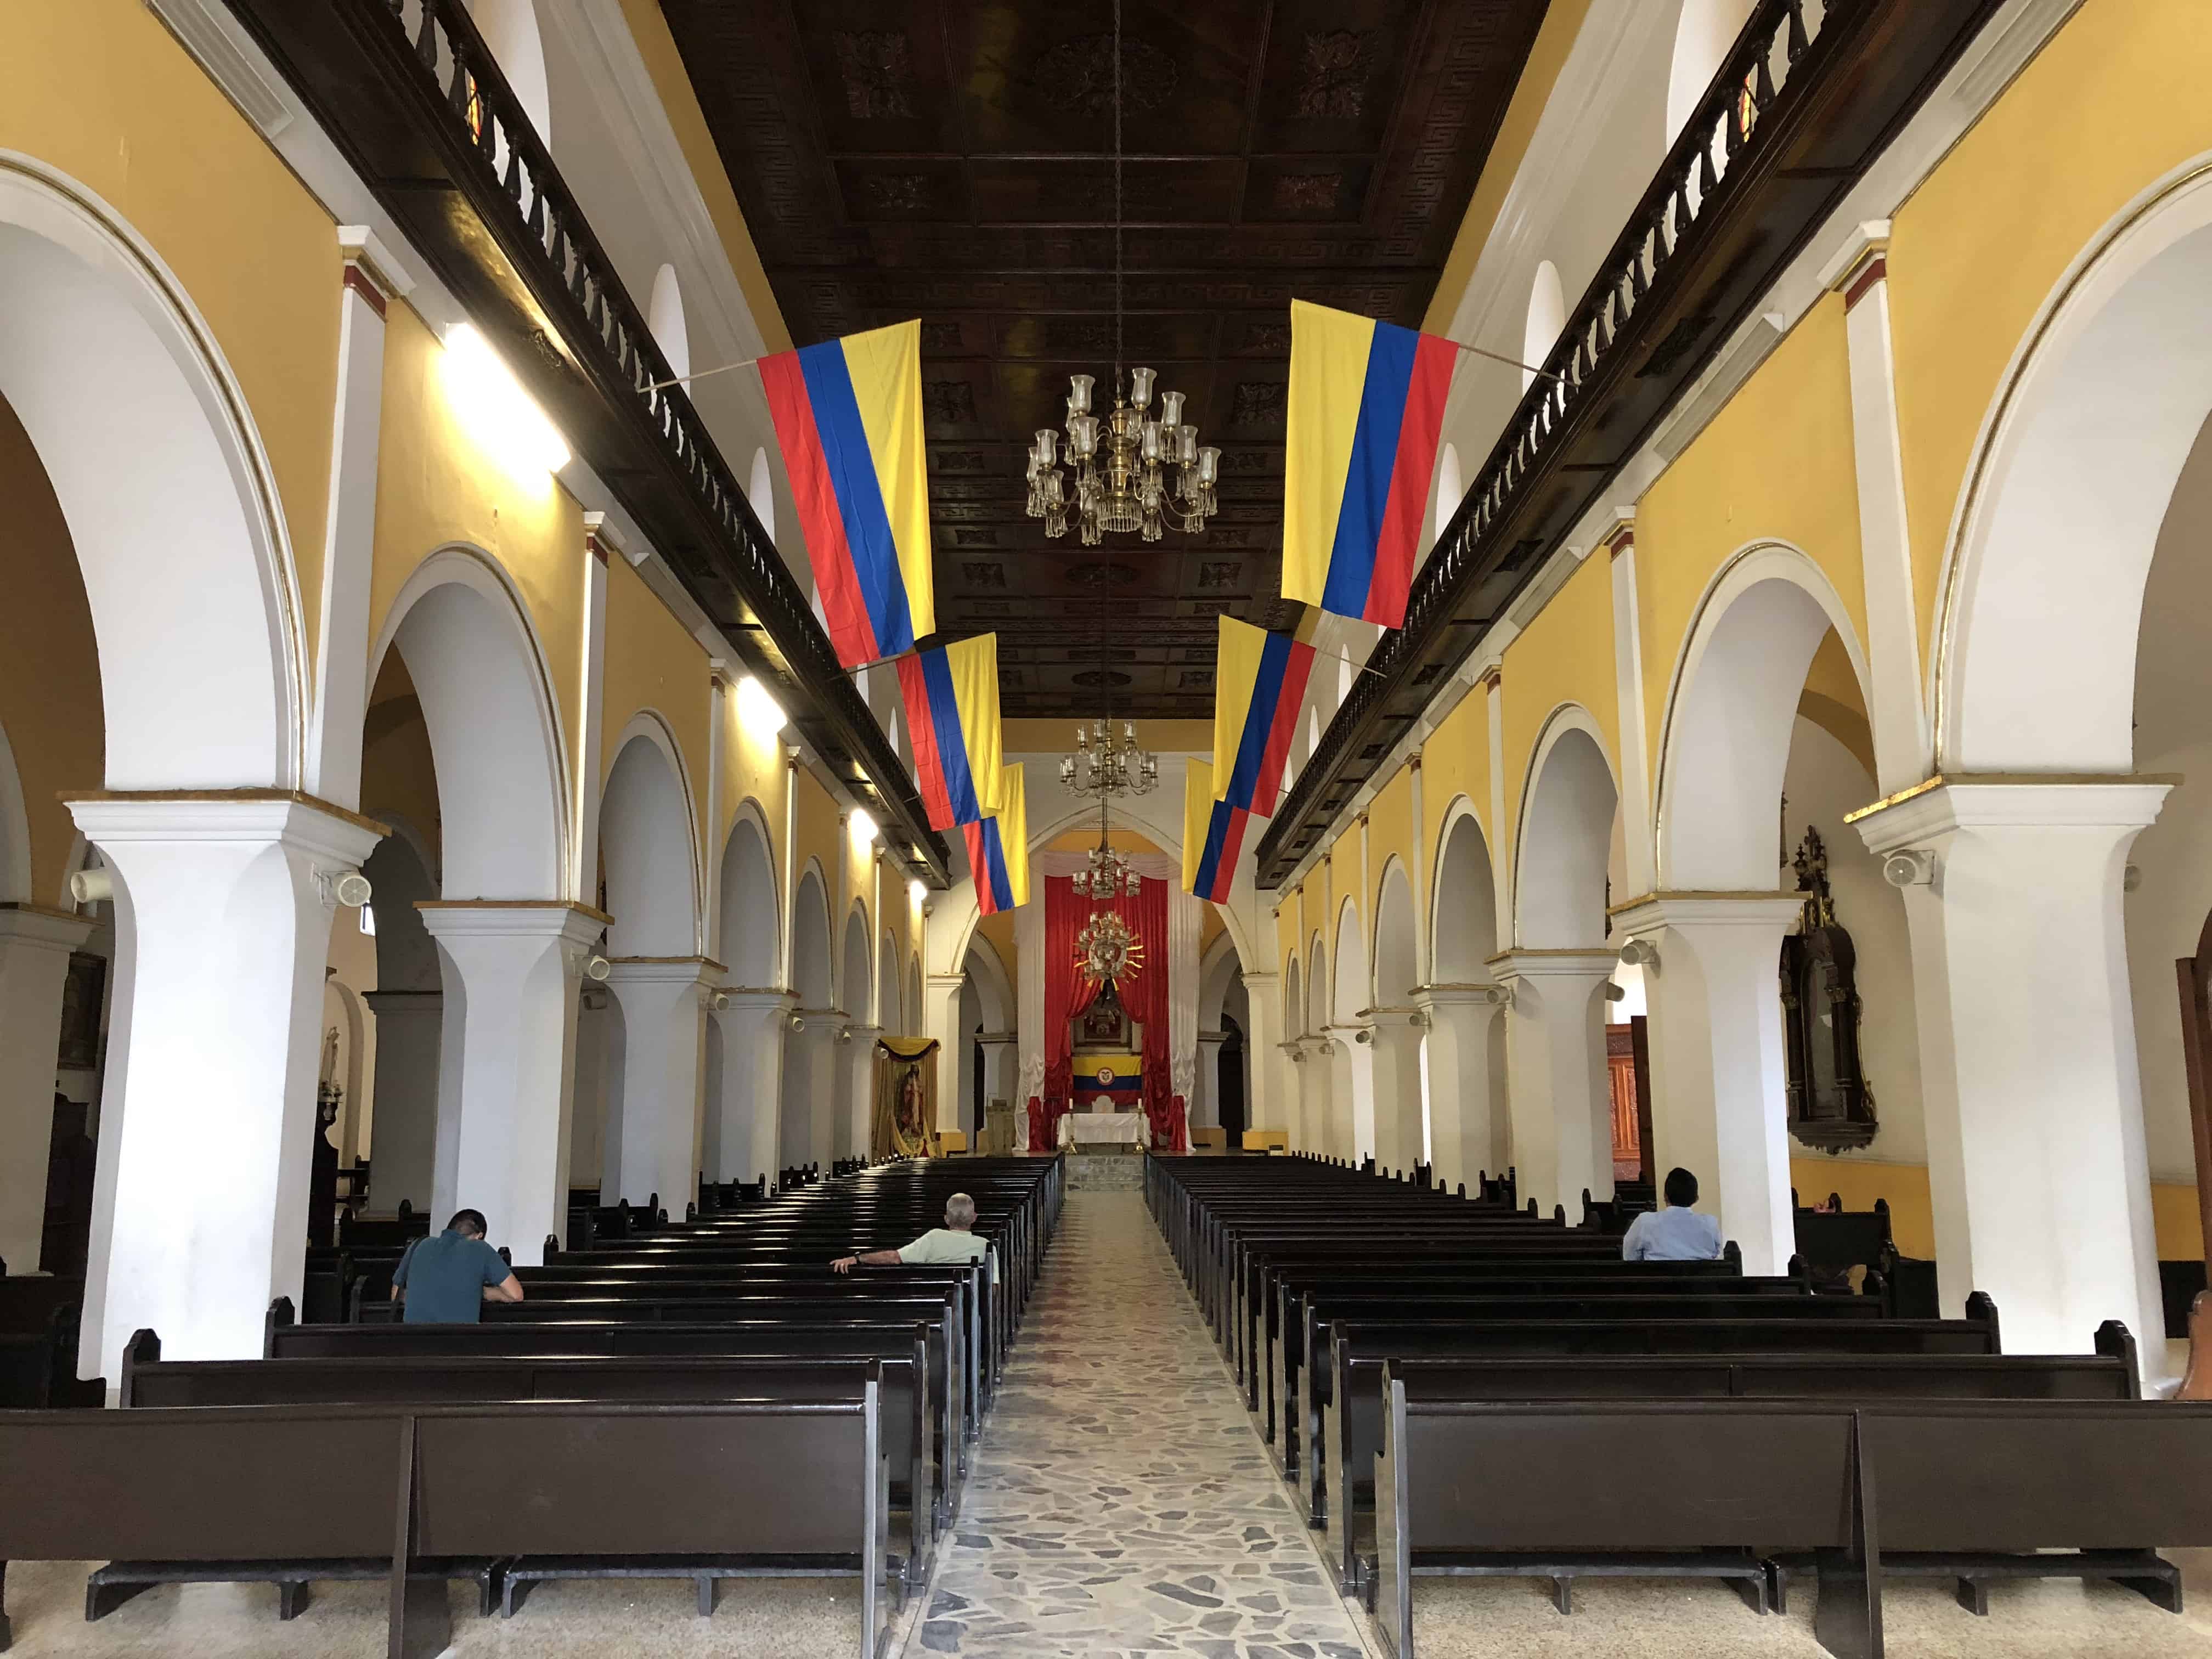 Church of San Laureano in Bucaramanga, Santander, Colombia